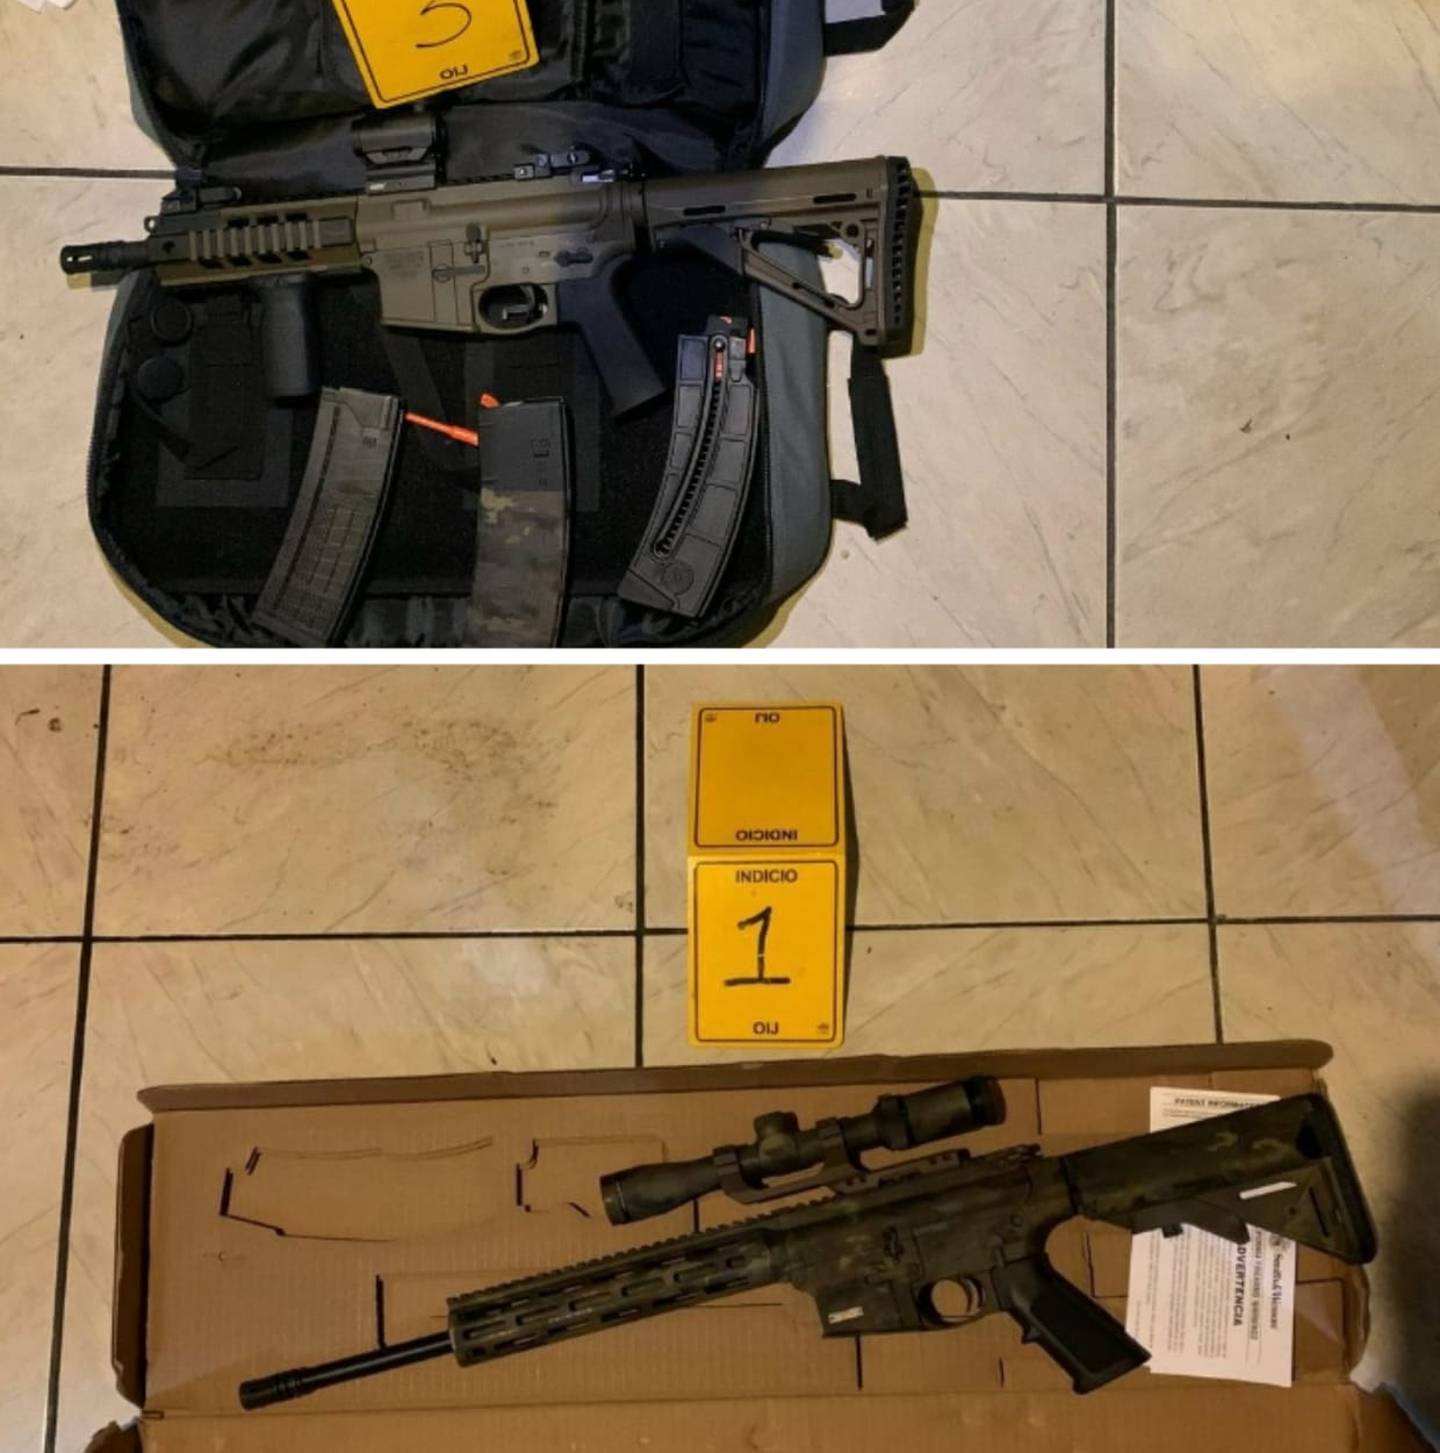 Dos fusiles con mira telescópica son parte de lo decomisado al funcionario público detenido por accionamiento de arma en vía pública de San Carlos. Foto: Cortesía OIJ.